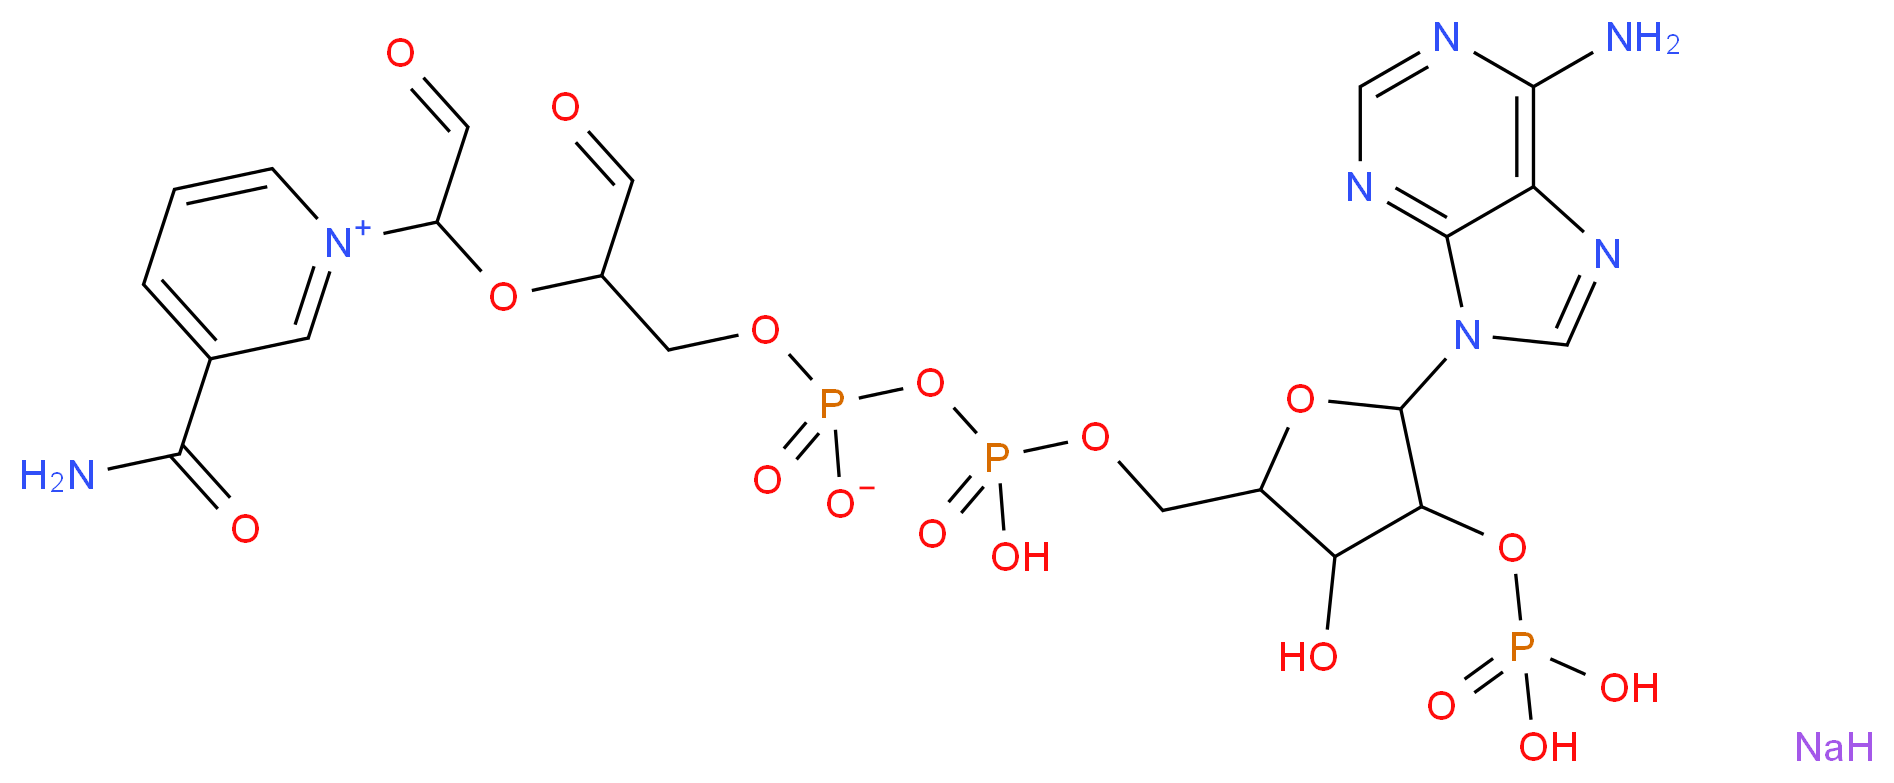 102281-43-6 molecular structure